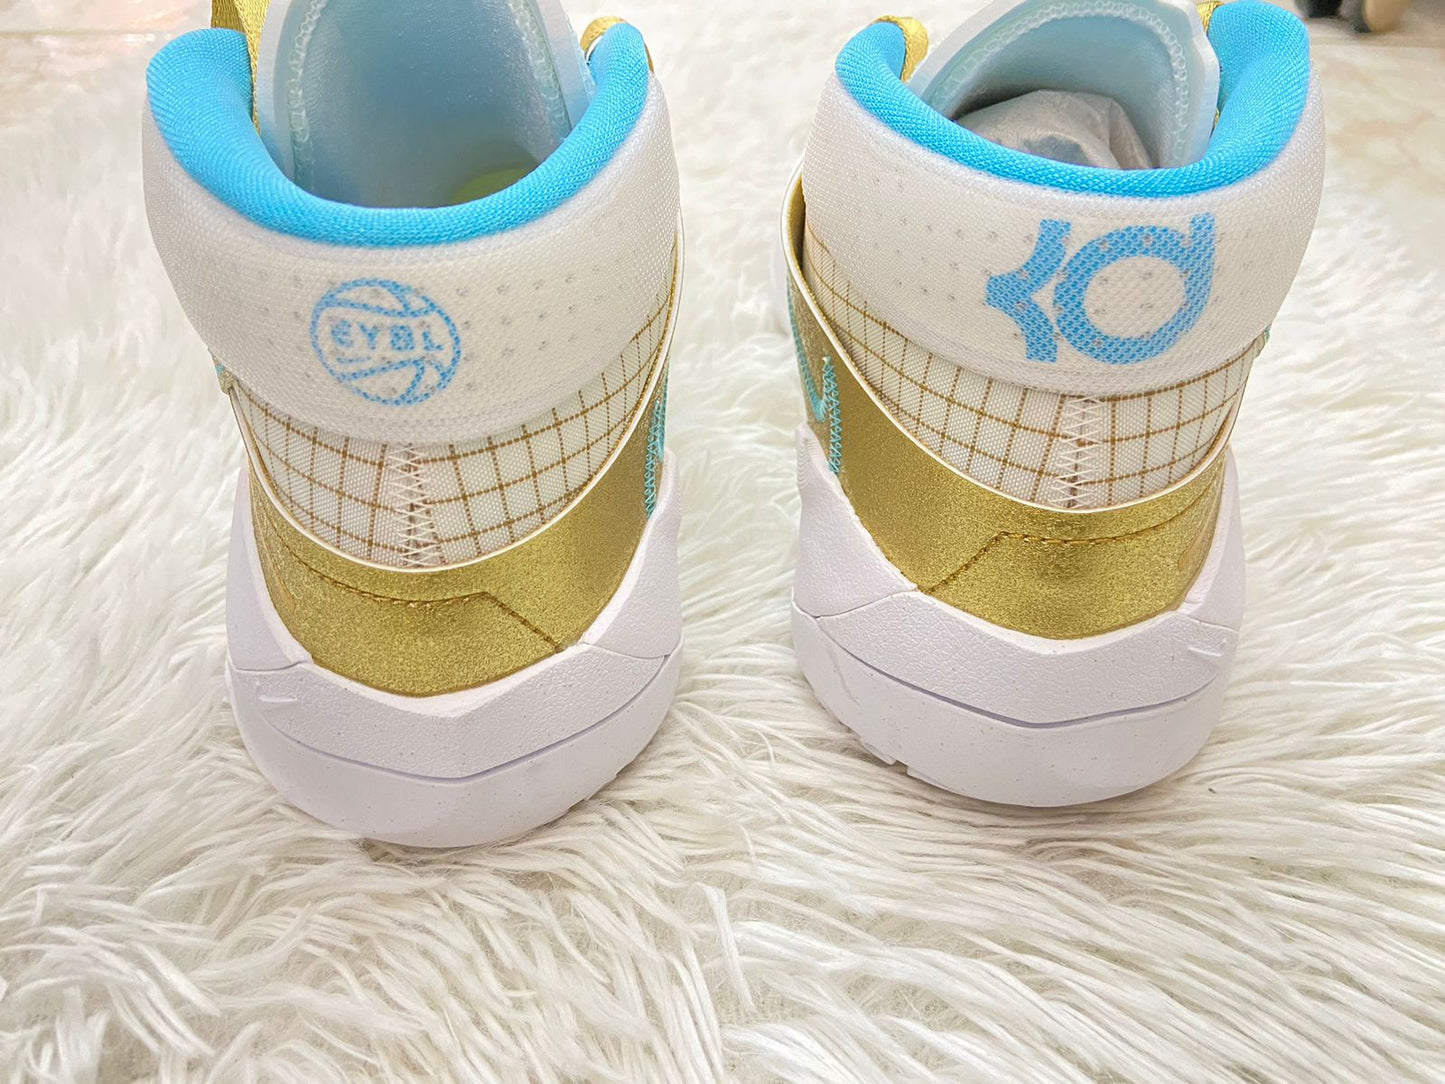 Tenis Nike original, altos blanco con dorado y rayas, con logotipo de la marca y cordones en dorado y azul por dentro.